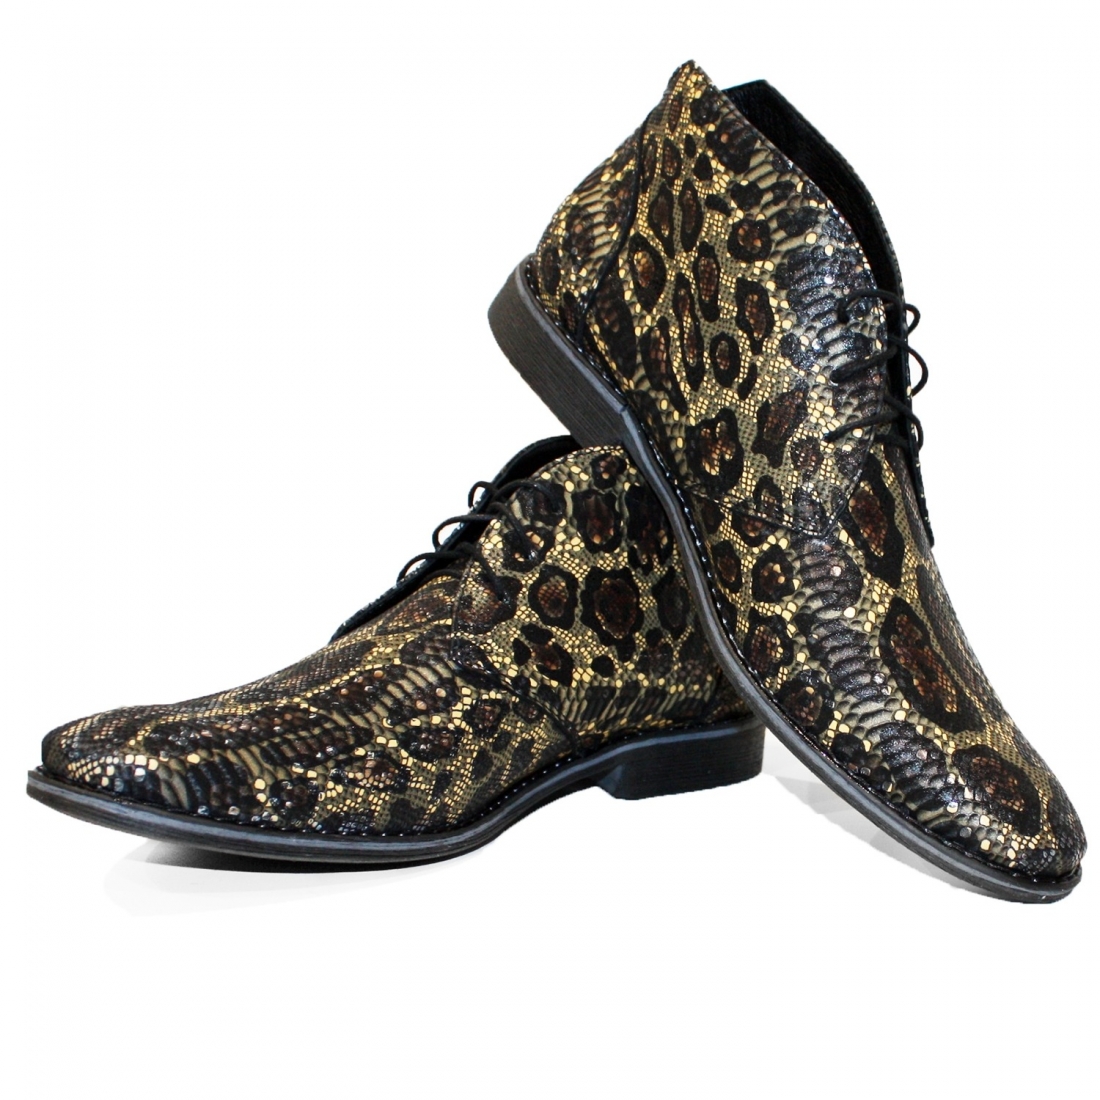 Modello Tarroka -  Chukka Stiefel - Handmade Colorful Italian Leather Shoes